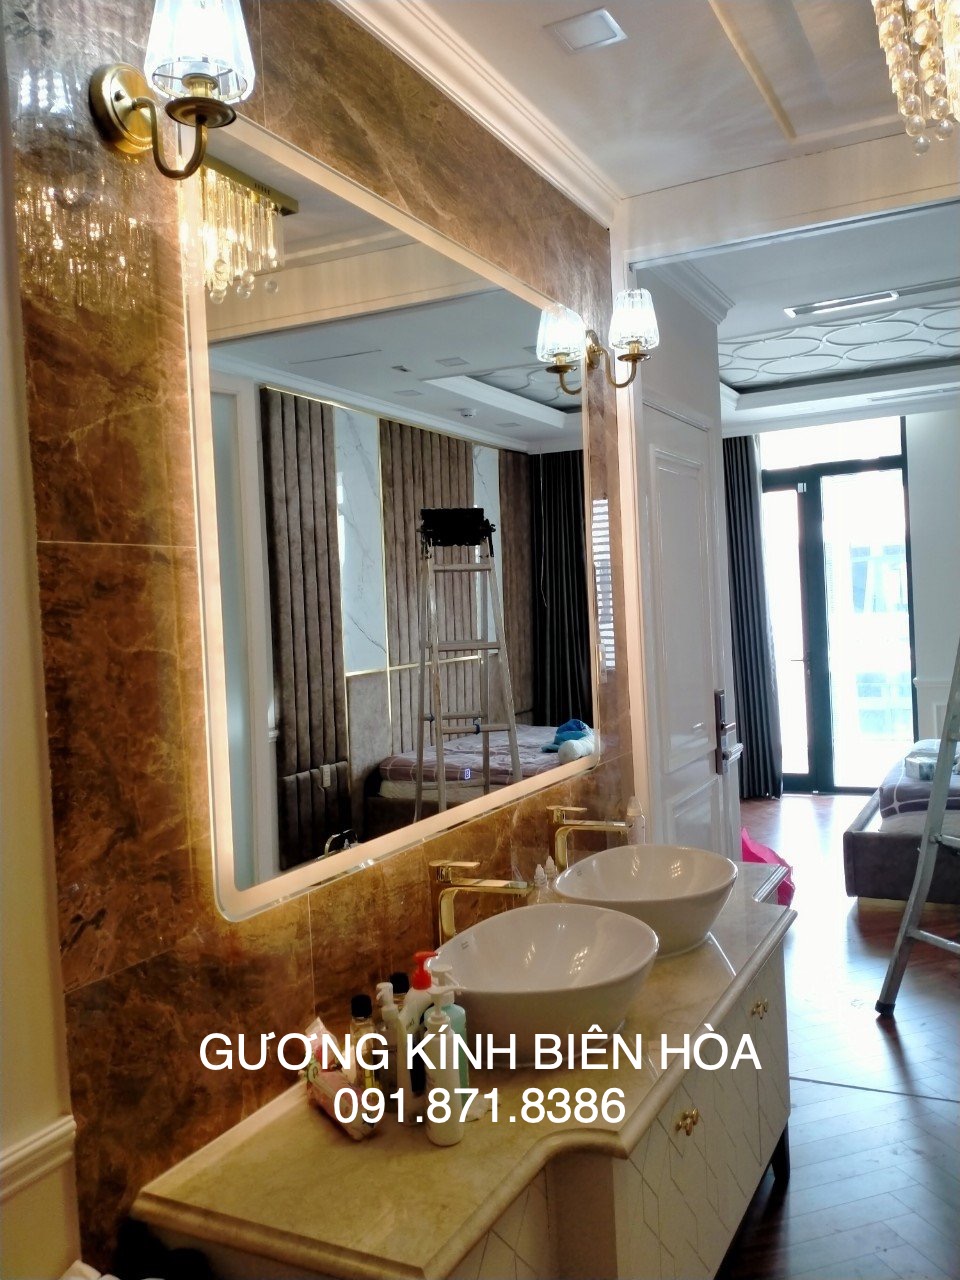 Gương nhà tắm cao cấp đèn led Biên Hòa Đồng Nai